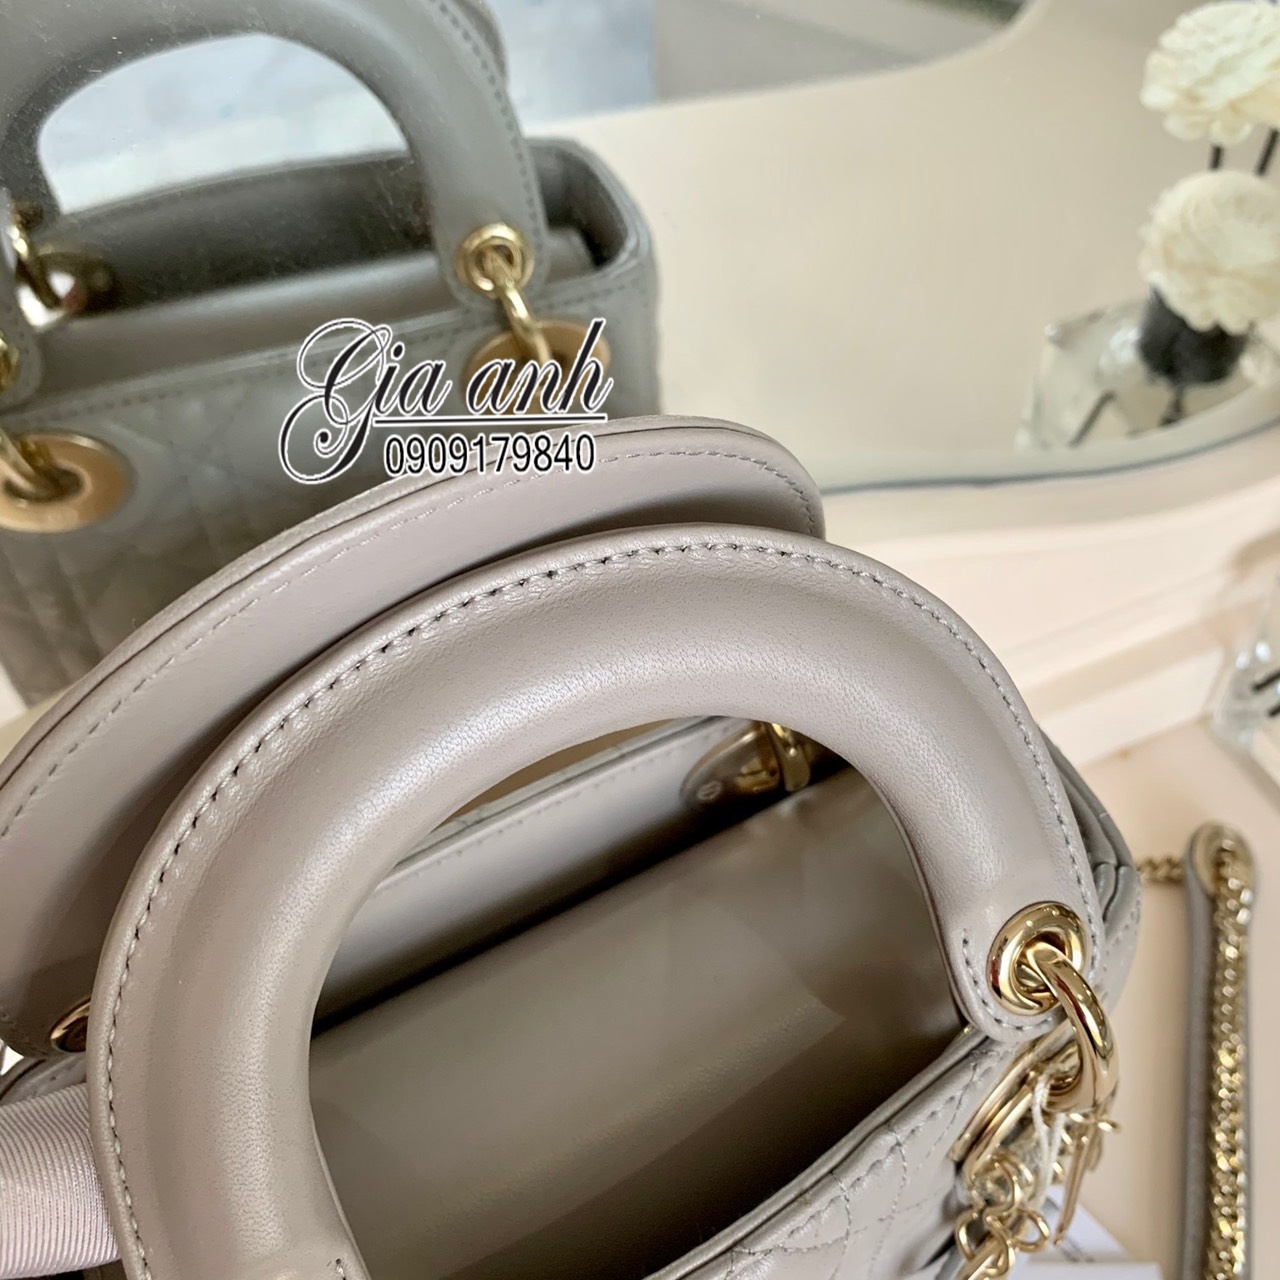 Túi Dior Lady mini Replica màu Grey